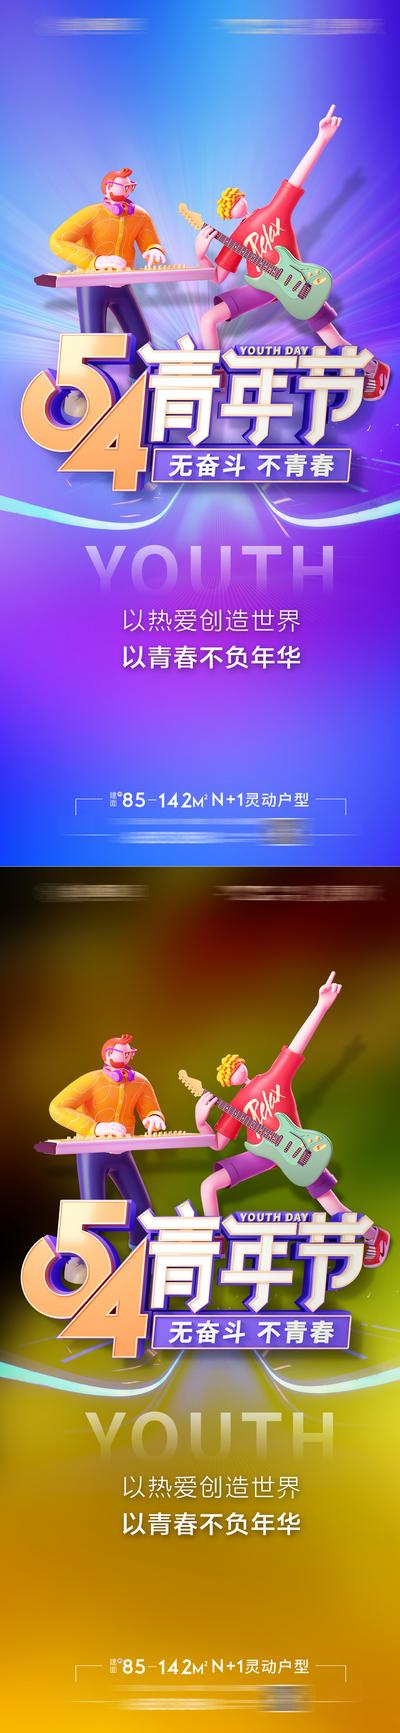 南门网 广告 海报 节日 青年节 52 青春 音乐 系列 